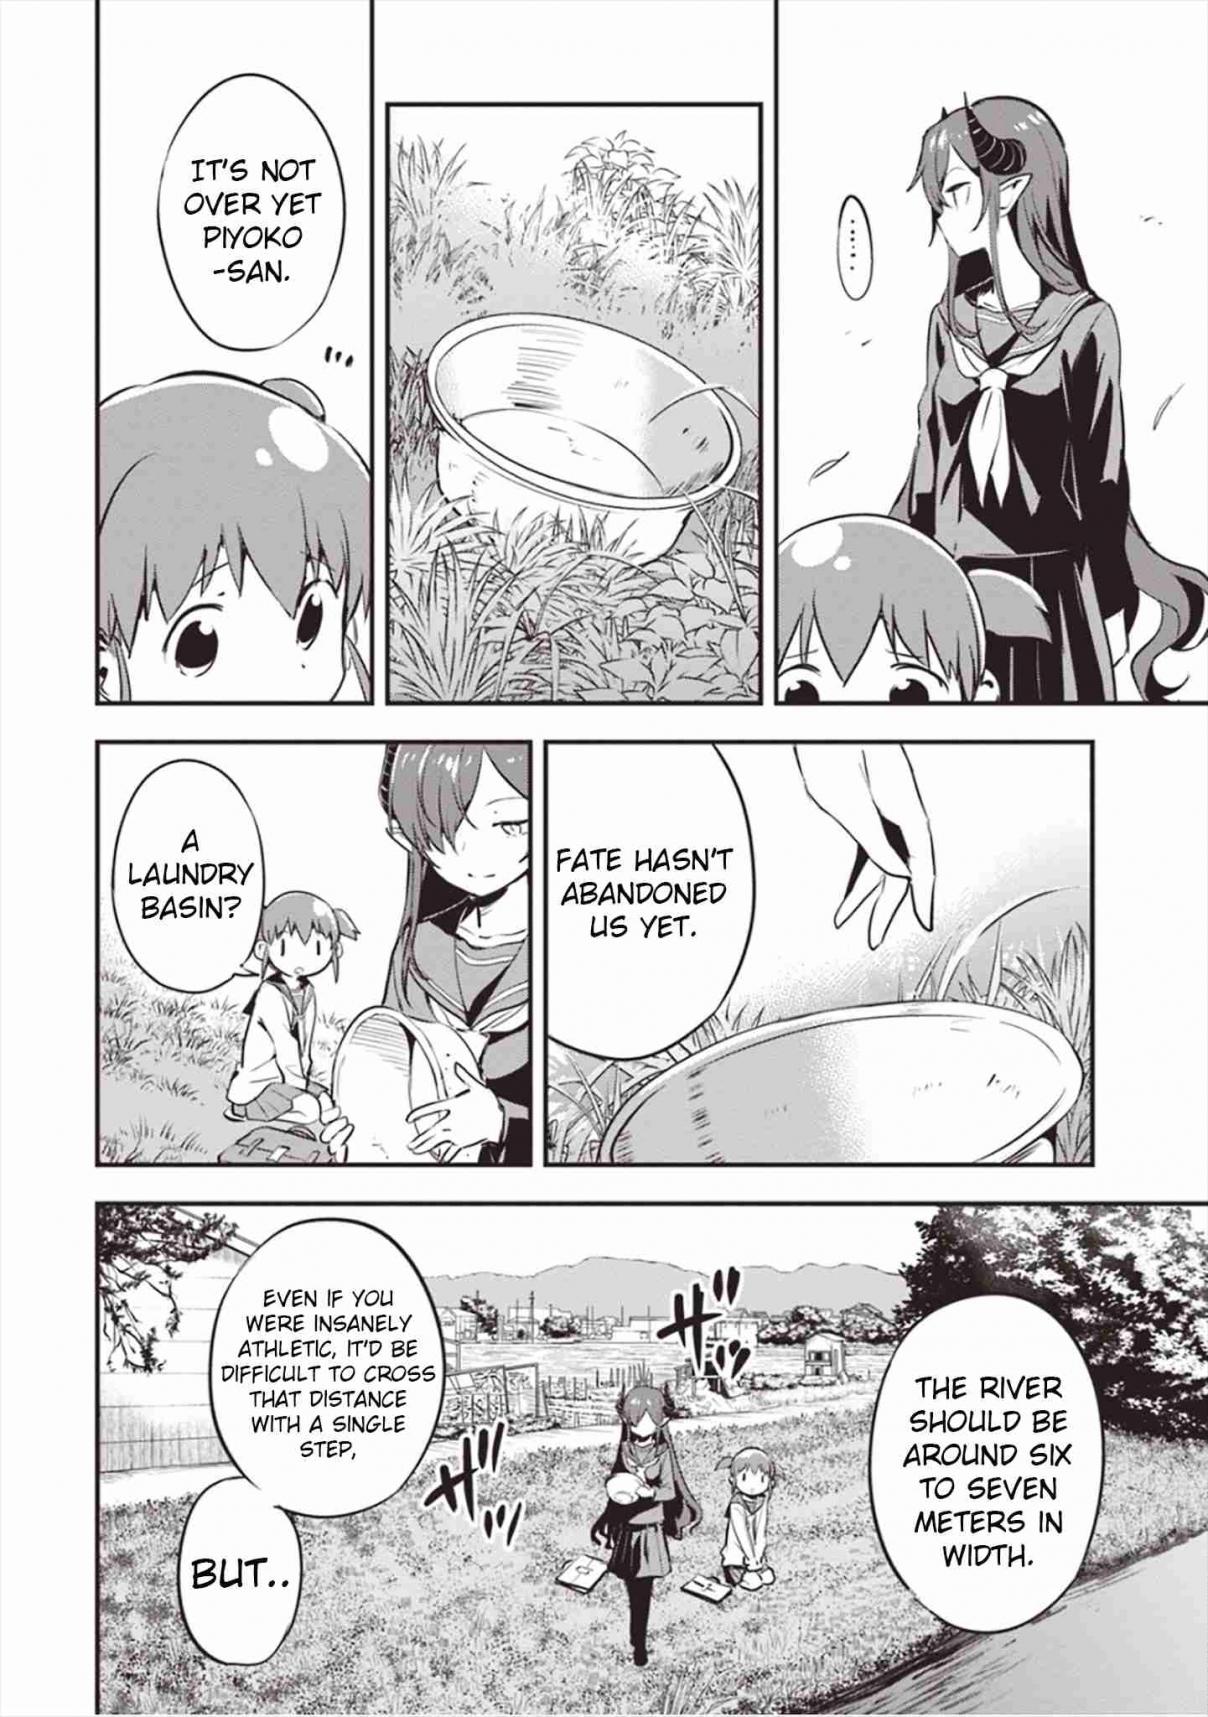 Piyoko to Makai Machi no Hime sama Vol. 1 Ch. 3 Piyoko, the Princess, and the Way to School